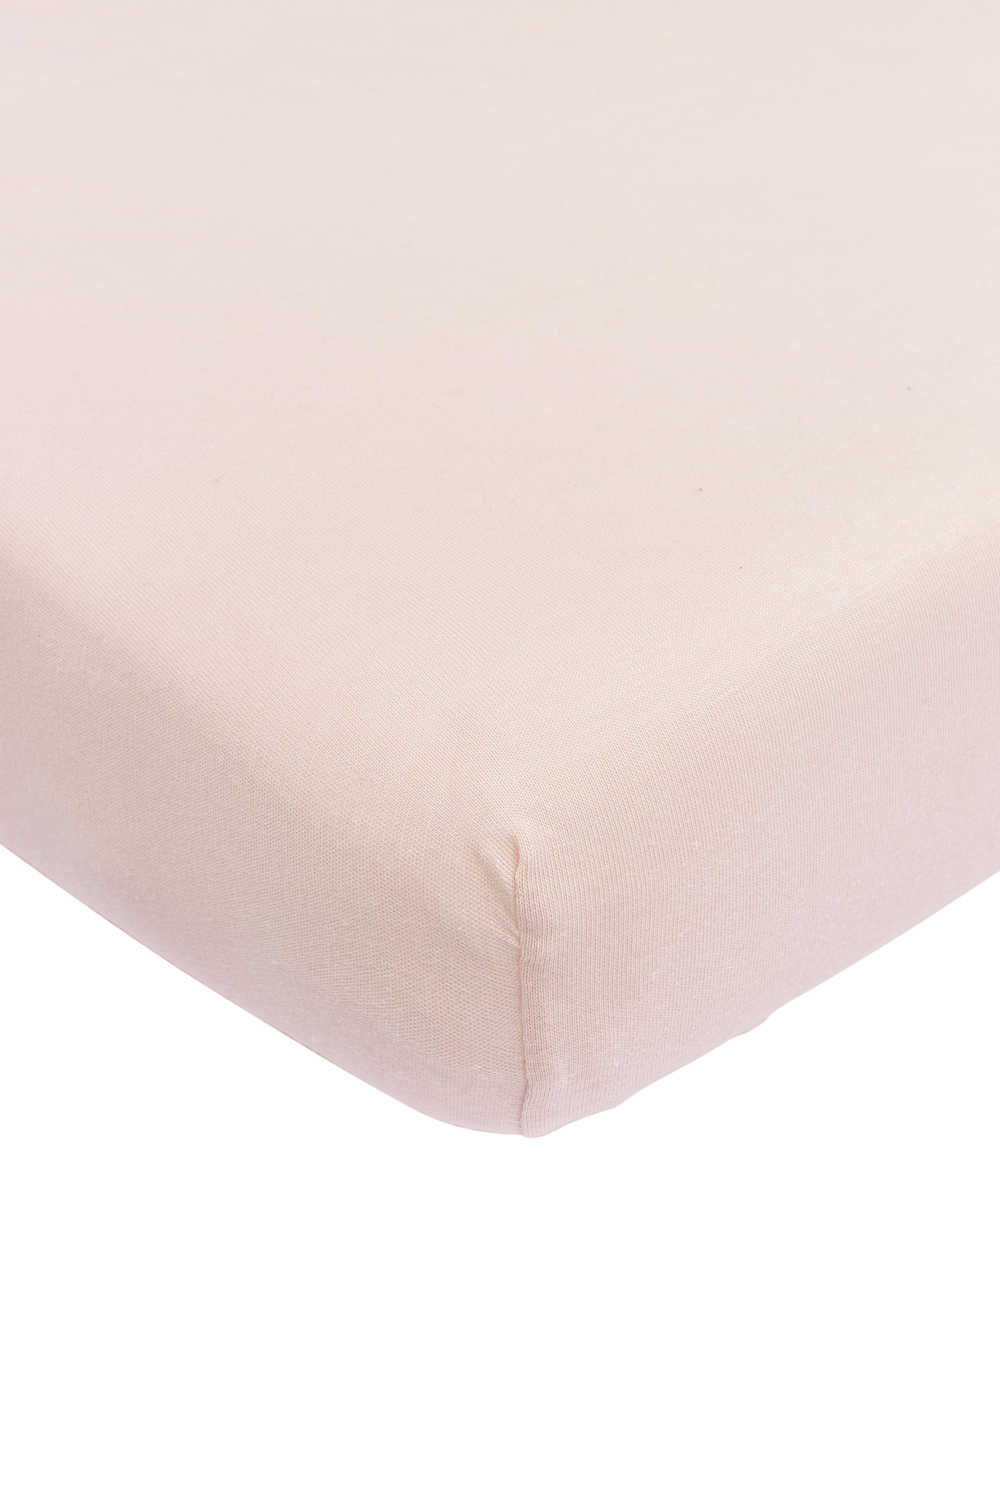 Jersey Hoeslaken Wieg - Soft Pink - 40x80/90cm